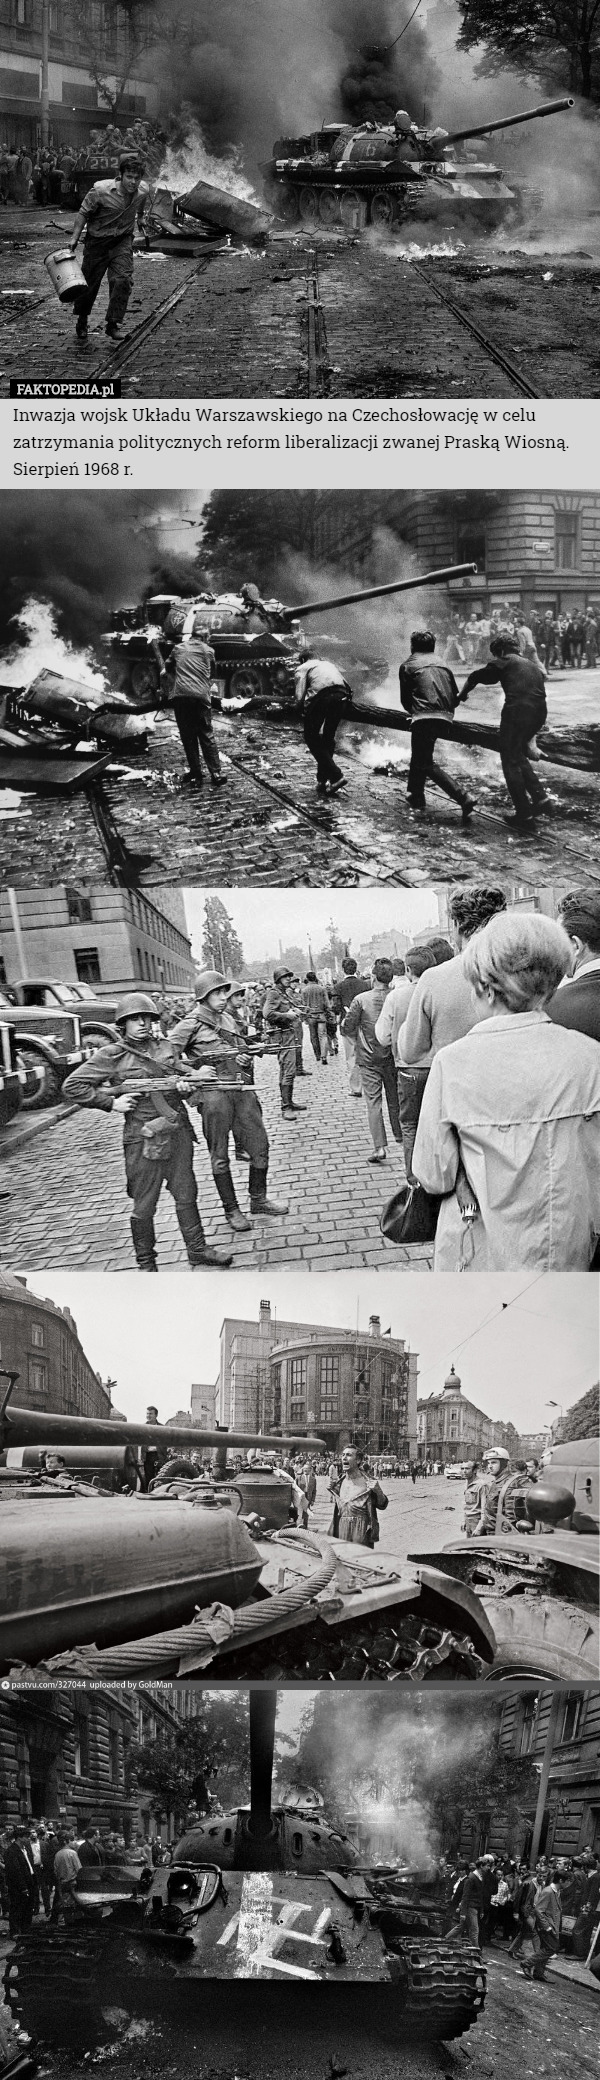 Inwazja wojsk Układu Warszawskiego na Czechosłowację w celu zatrzymania politycznych reform liberalizacji zwanej Praską Wiosną.
Sierpień 1968 r. 